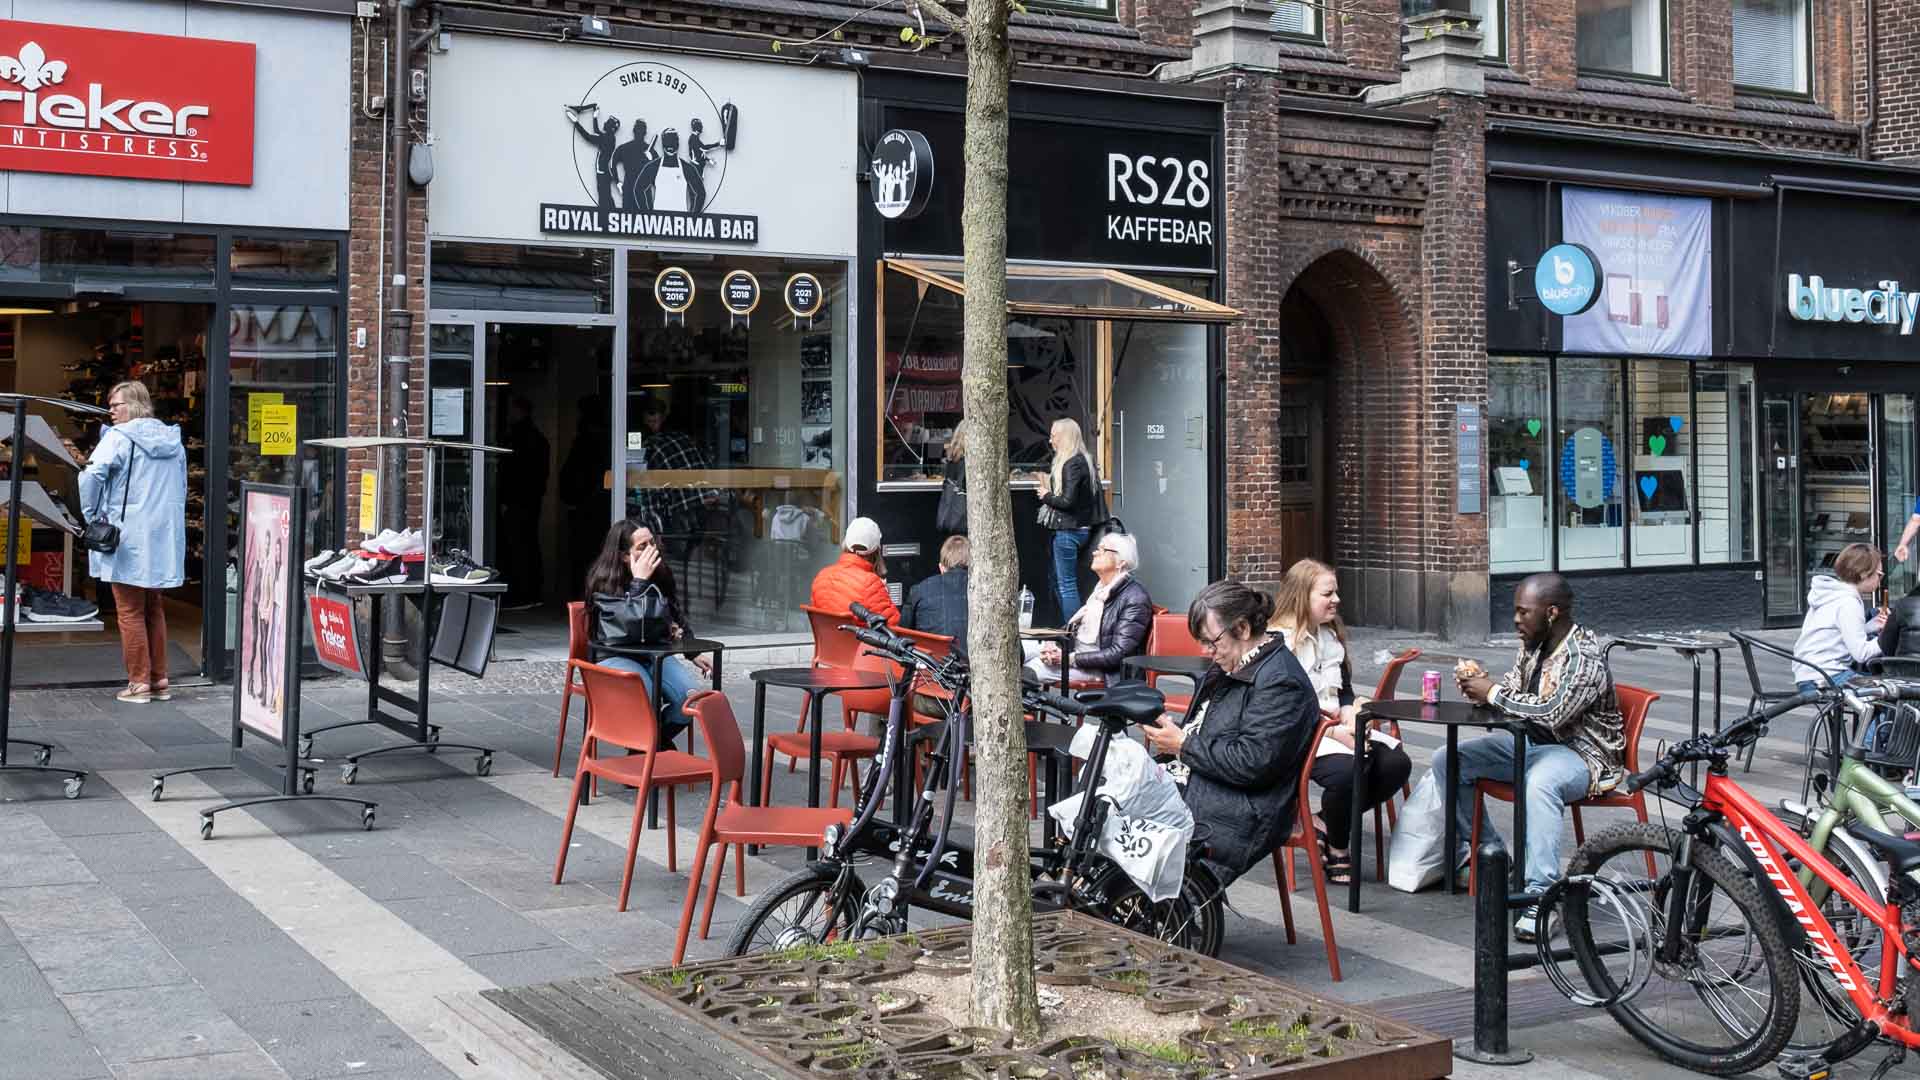 Her sidder kunderne og spiser uden for Royal Shawarma Bar